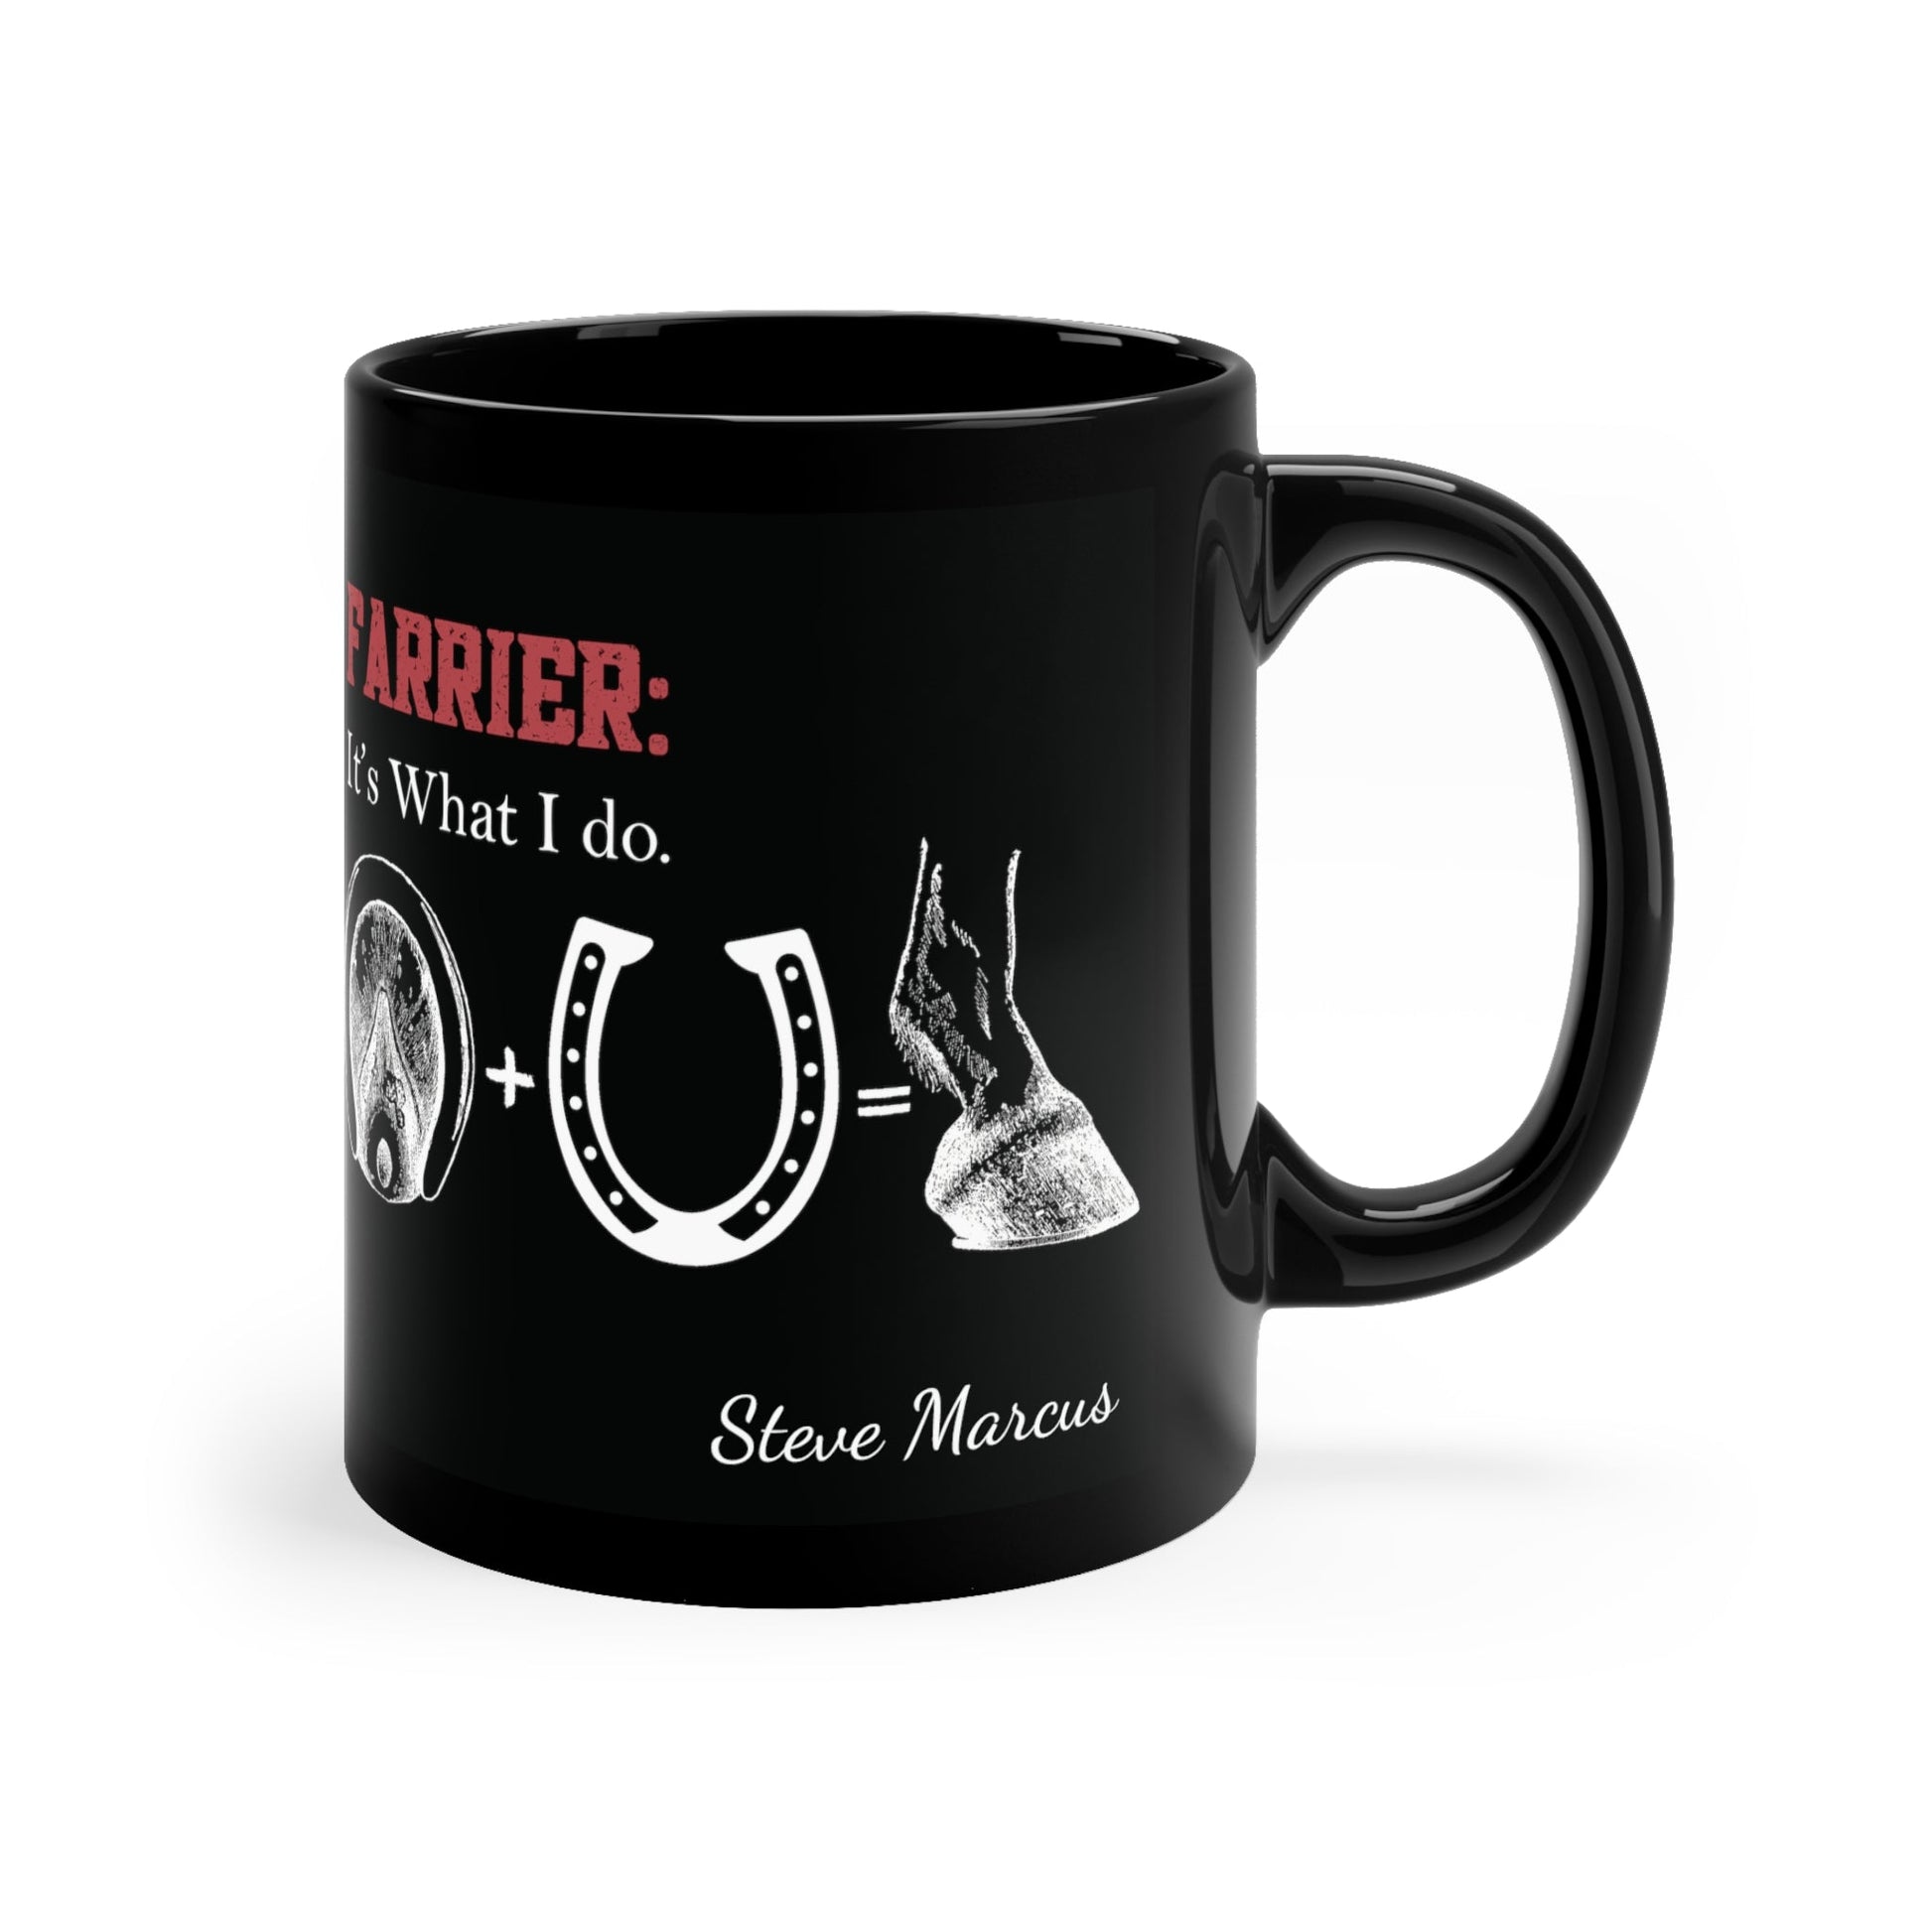 Farrier Ceramic Black Mug, Farrier: "Its What I Do", Horseshoer Cup, Professional Farrier - FlooredByArt